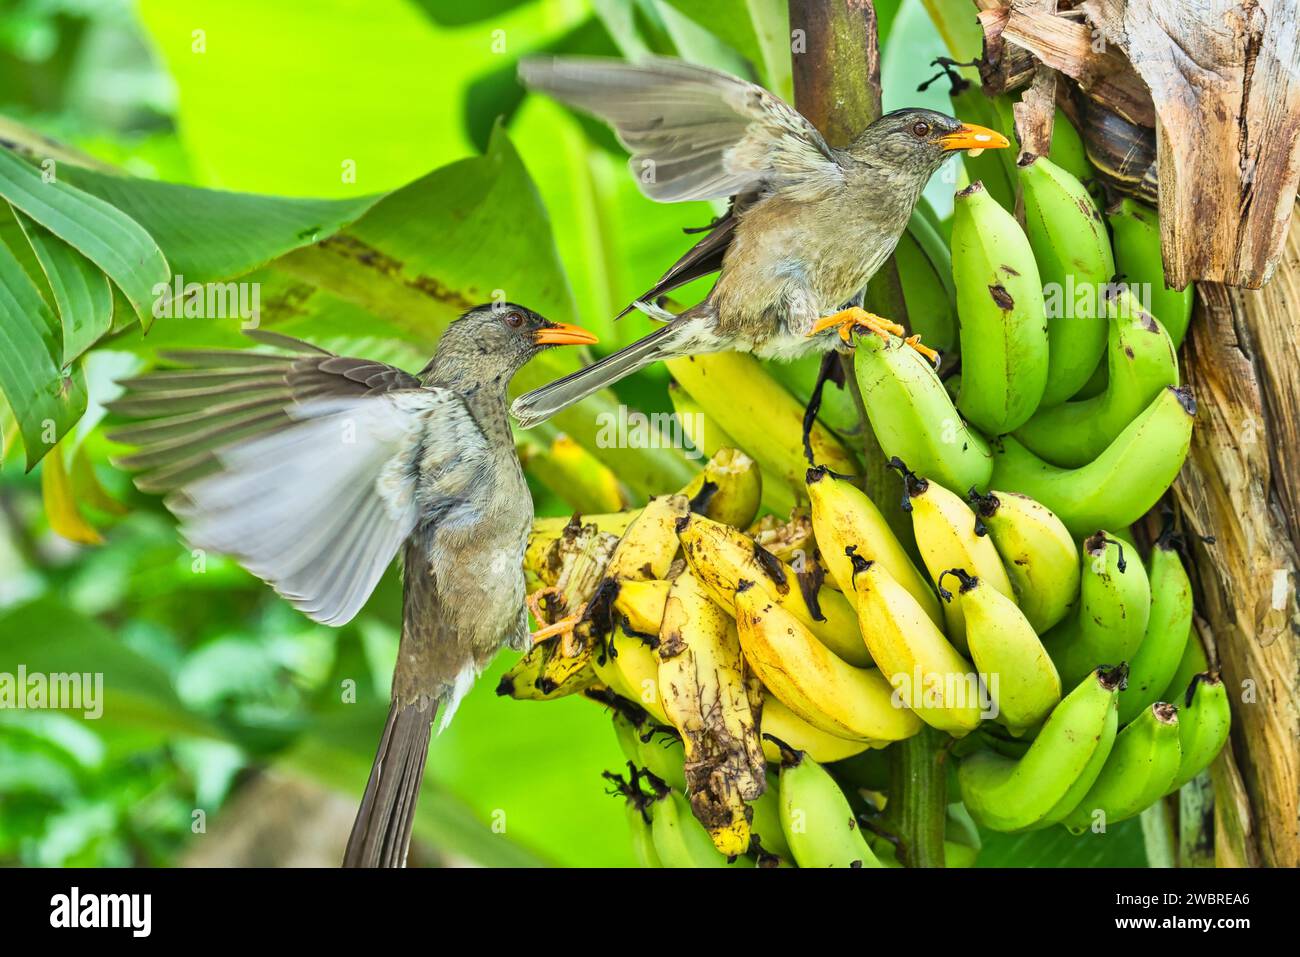 Nahaufnahme des seychellischen bulbul endemischen Vogels, der gelbe Bananen im Garten isst Stockfoto